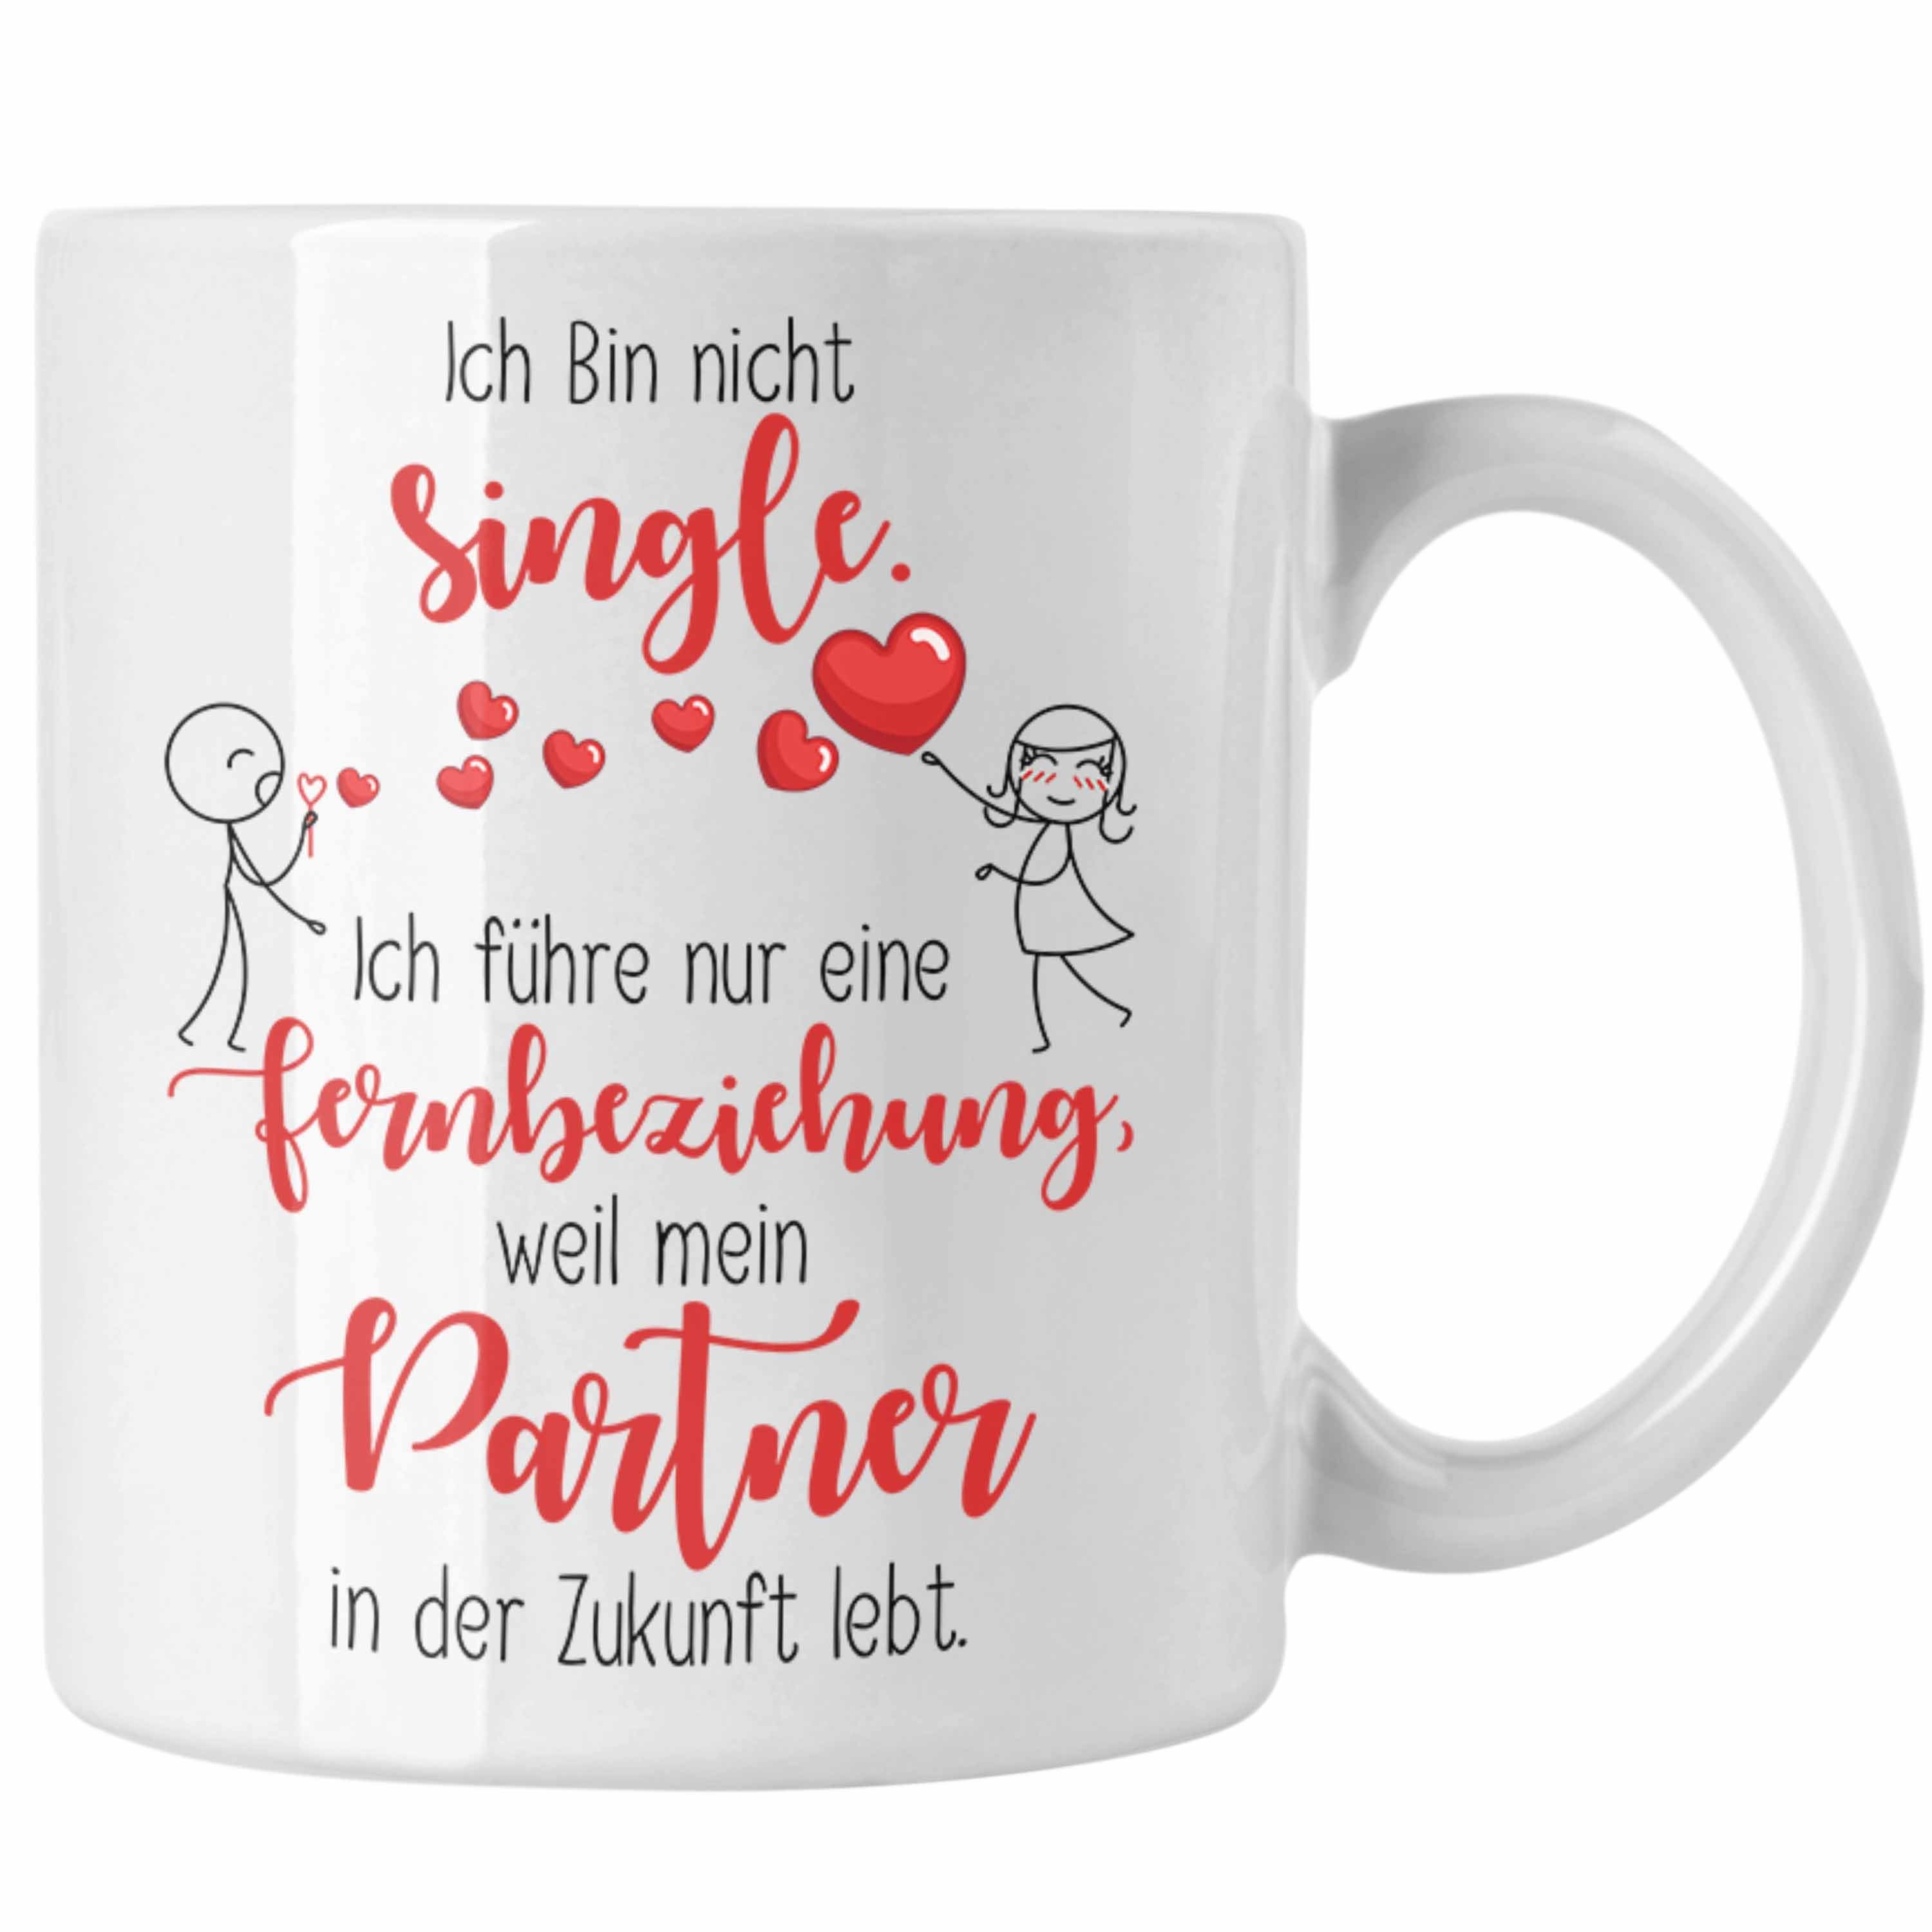 Trendation Tasse Single Tasse Geschenk Fernbeziehung mit Partner in der Zukunft Geschen Weiss